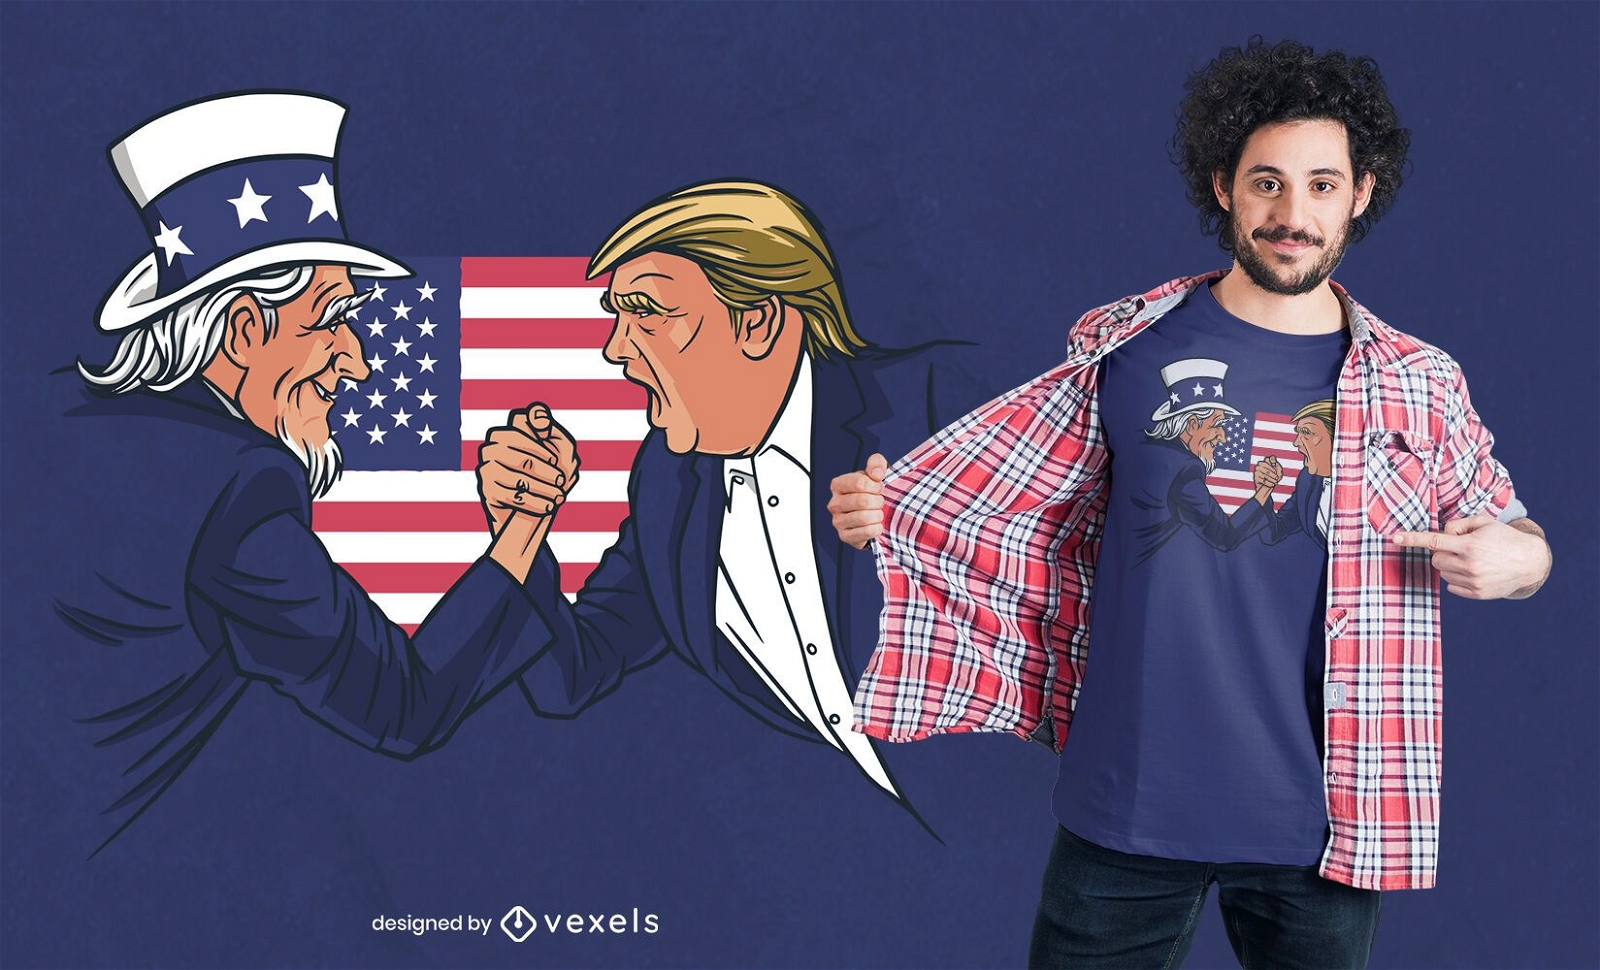 Design de camisetas do Tio Sam e Trump